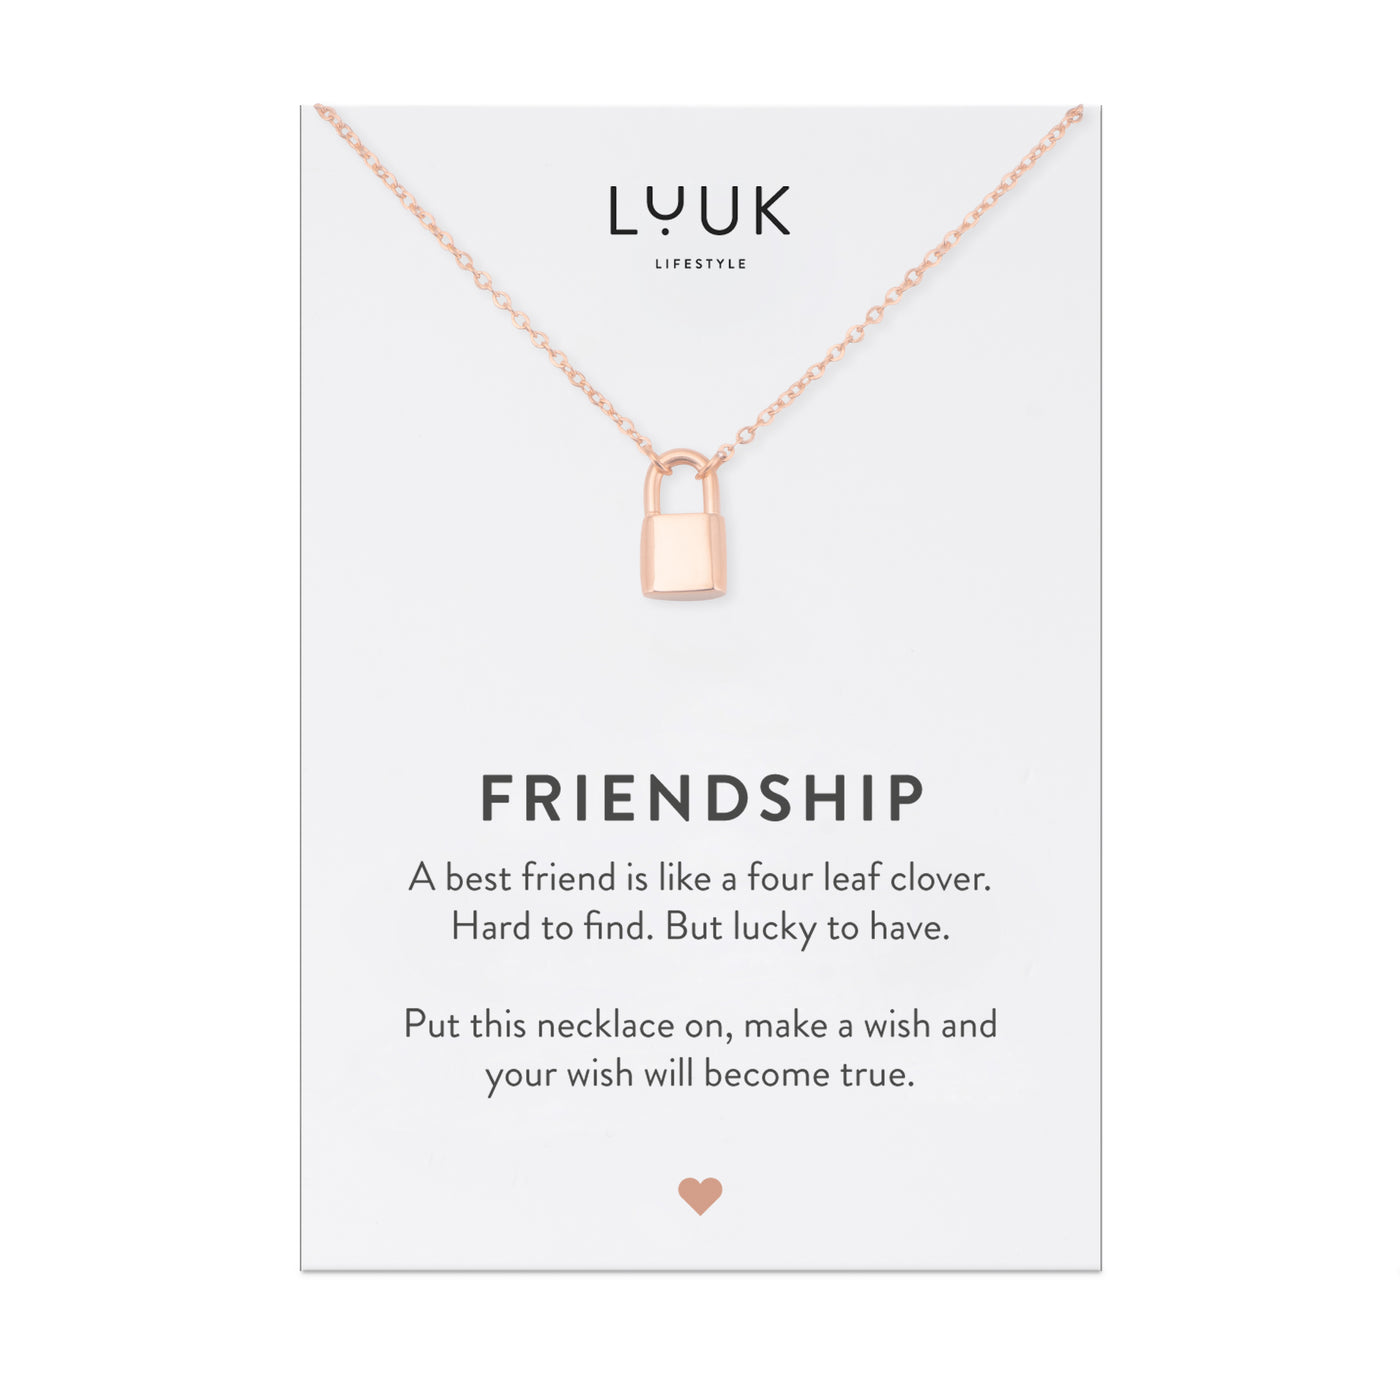 Rosegoldene Halskette mit Vorhängeschloss Anhänger auf Friendship Spruchkarte von der Brand Luuk Lifestyle